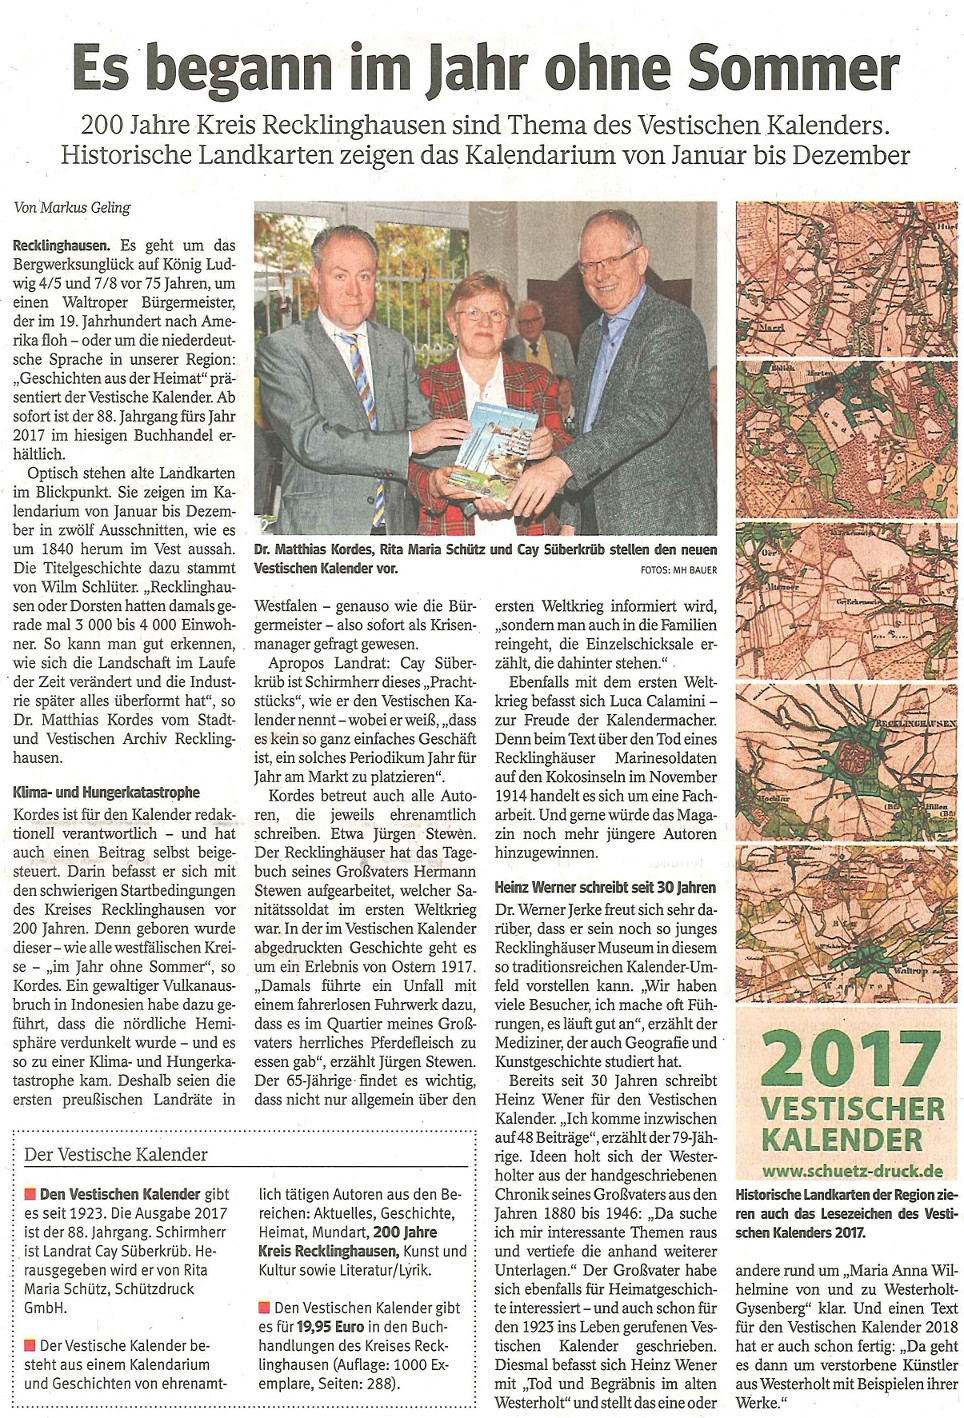 RZ/WAZ, Ausg. vom 10.11.2017, mit frdl. Genehmigung des Medienhauses Bauer.